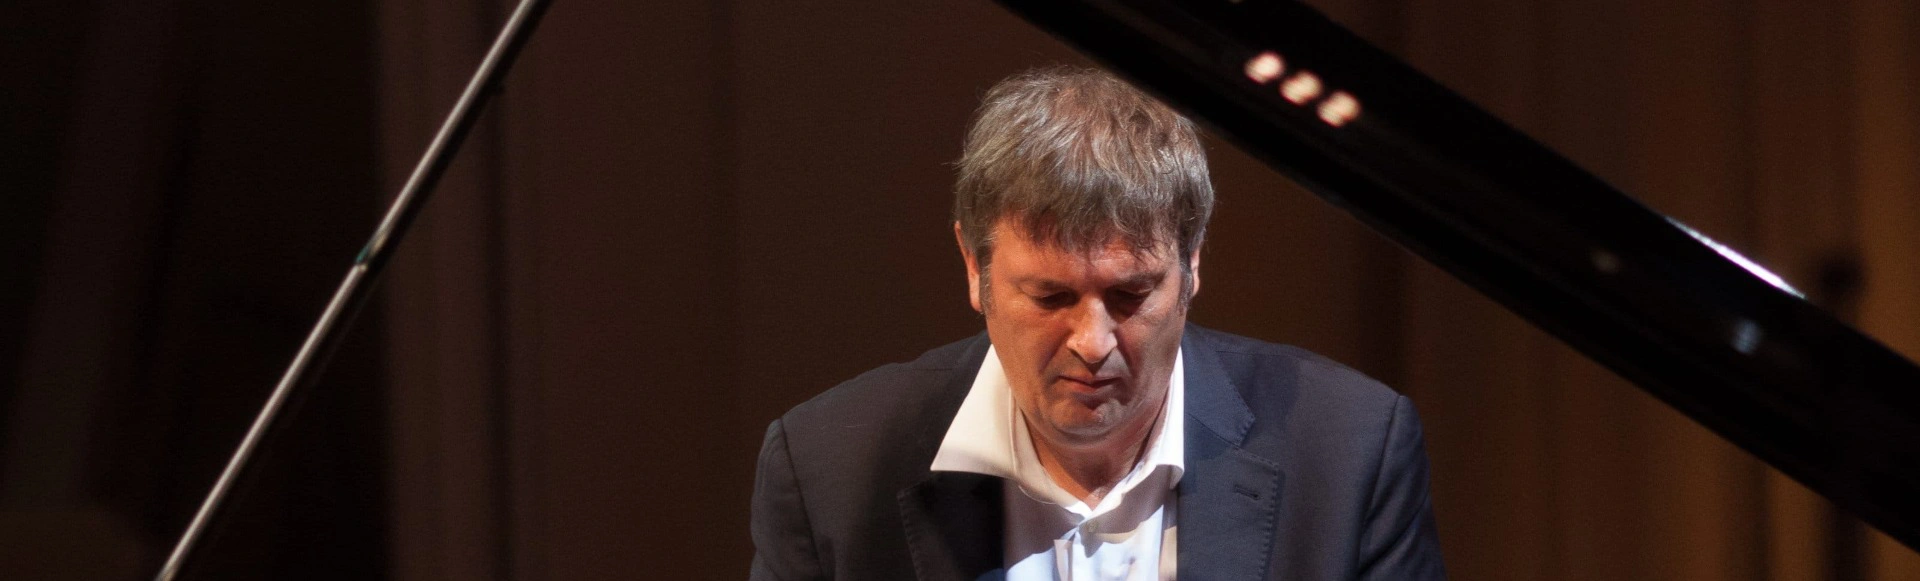 Борис Березовский (фортепиано)